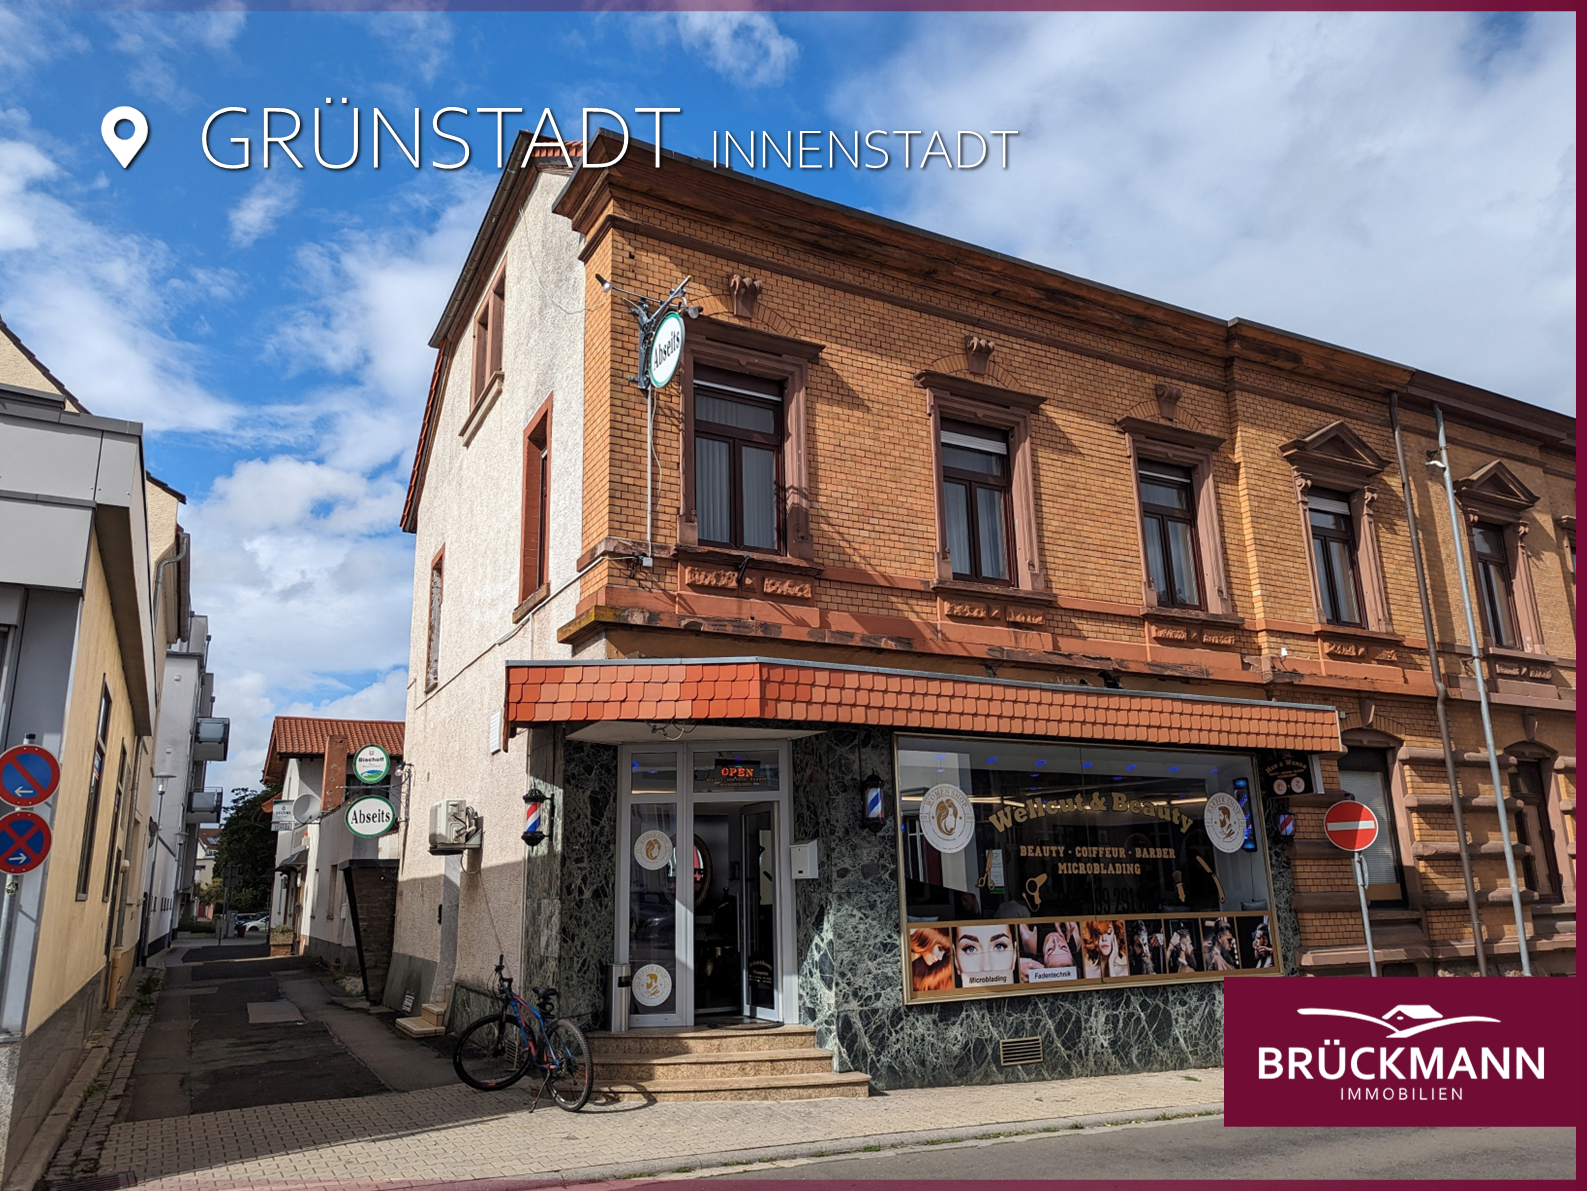 Wohn-/Geschäftshaus mit 5 Mieteinheiten in bester, zentraler Lage von Grünstadt!, 67269 Grünstadt, Mehrfamilienhaus